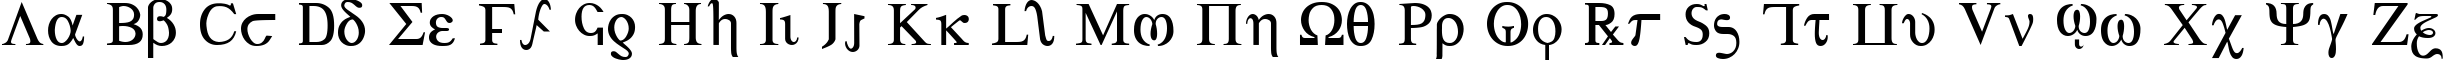 Пример написания английского алфавита шрифтом Achilles